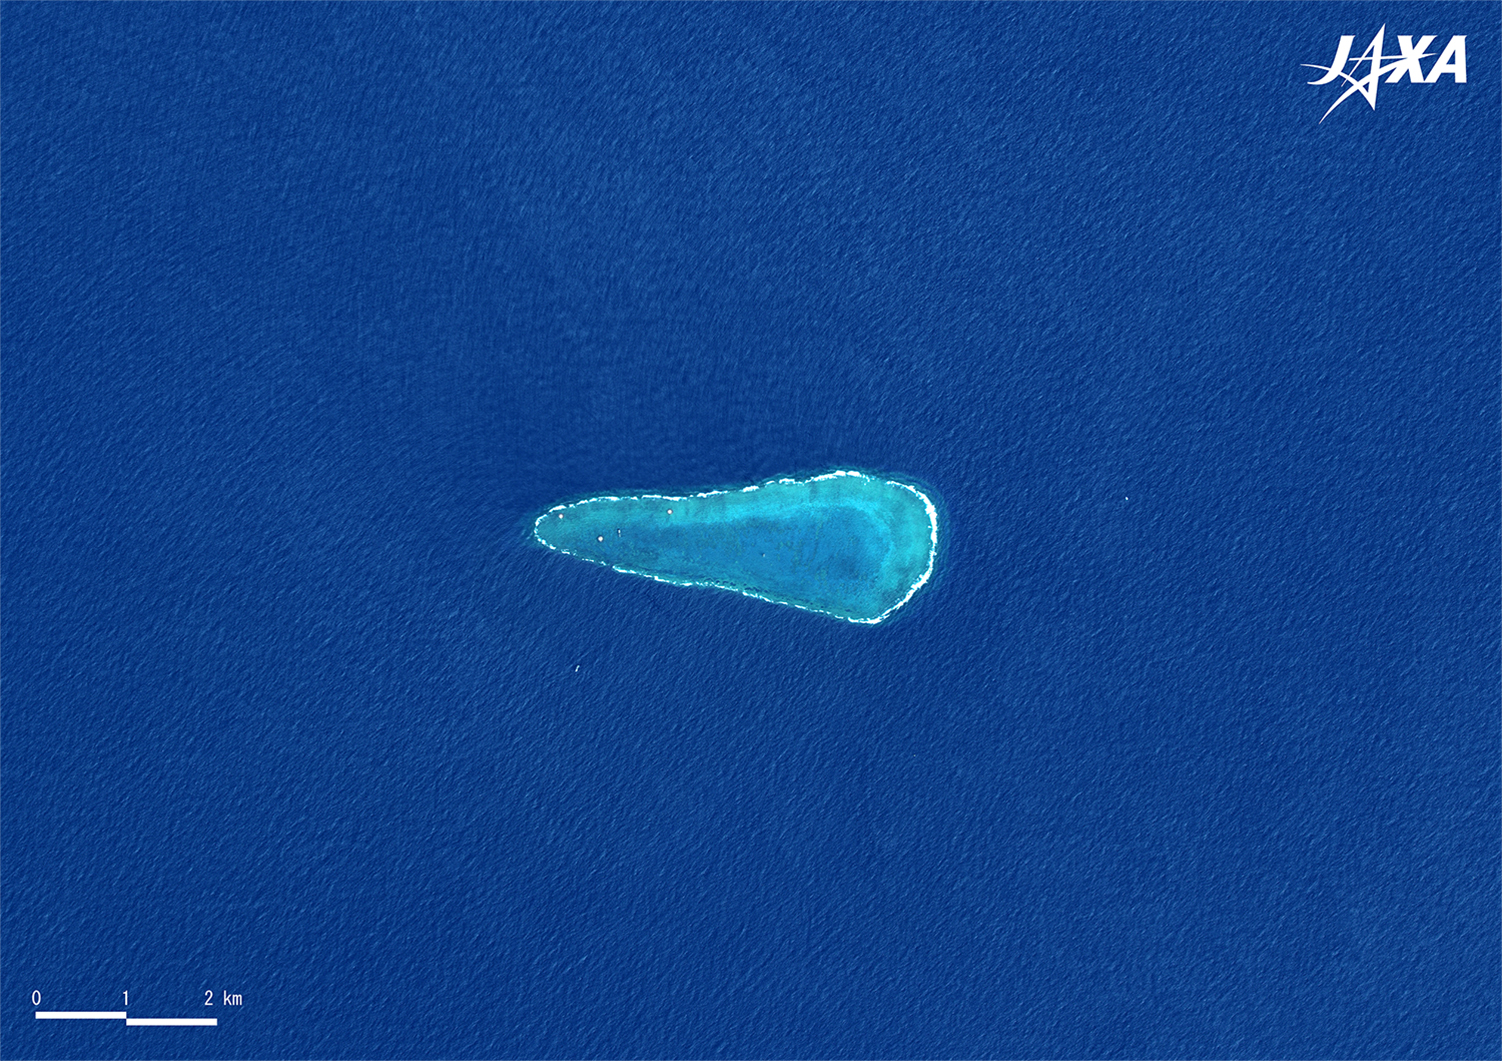 だいちから見た日本の都市 日本最南端の島 沖ノ鳥島:衛星画像